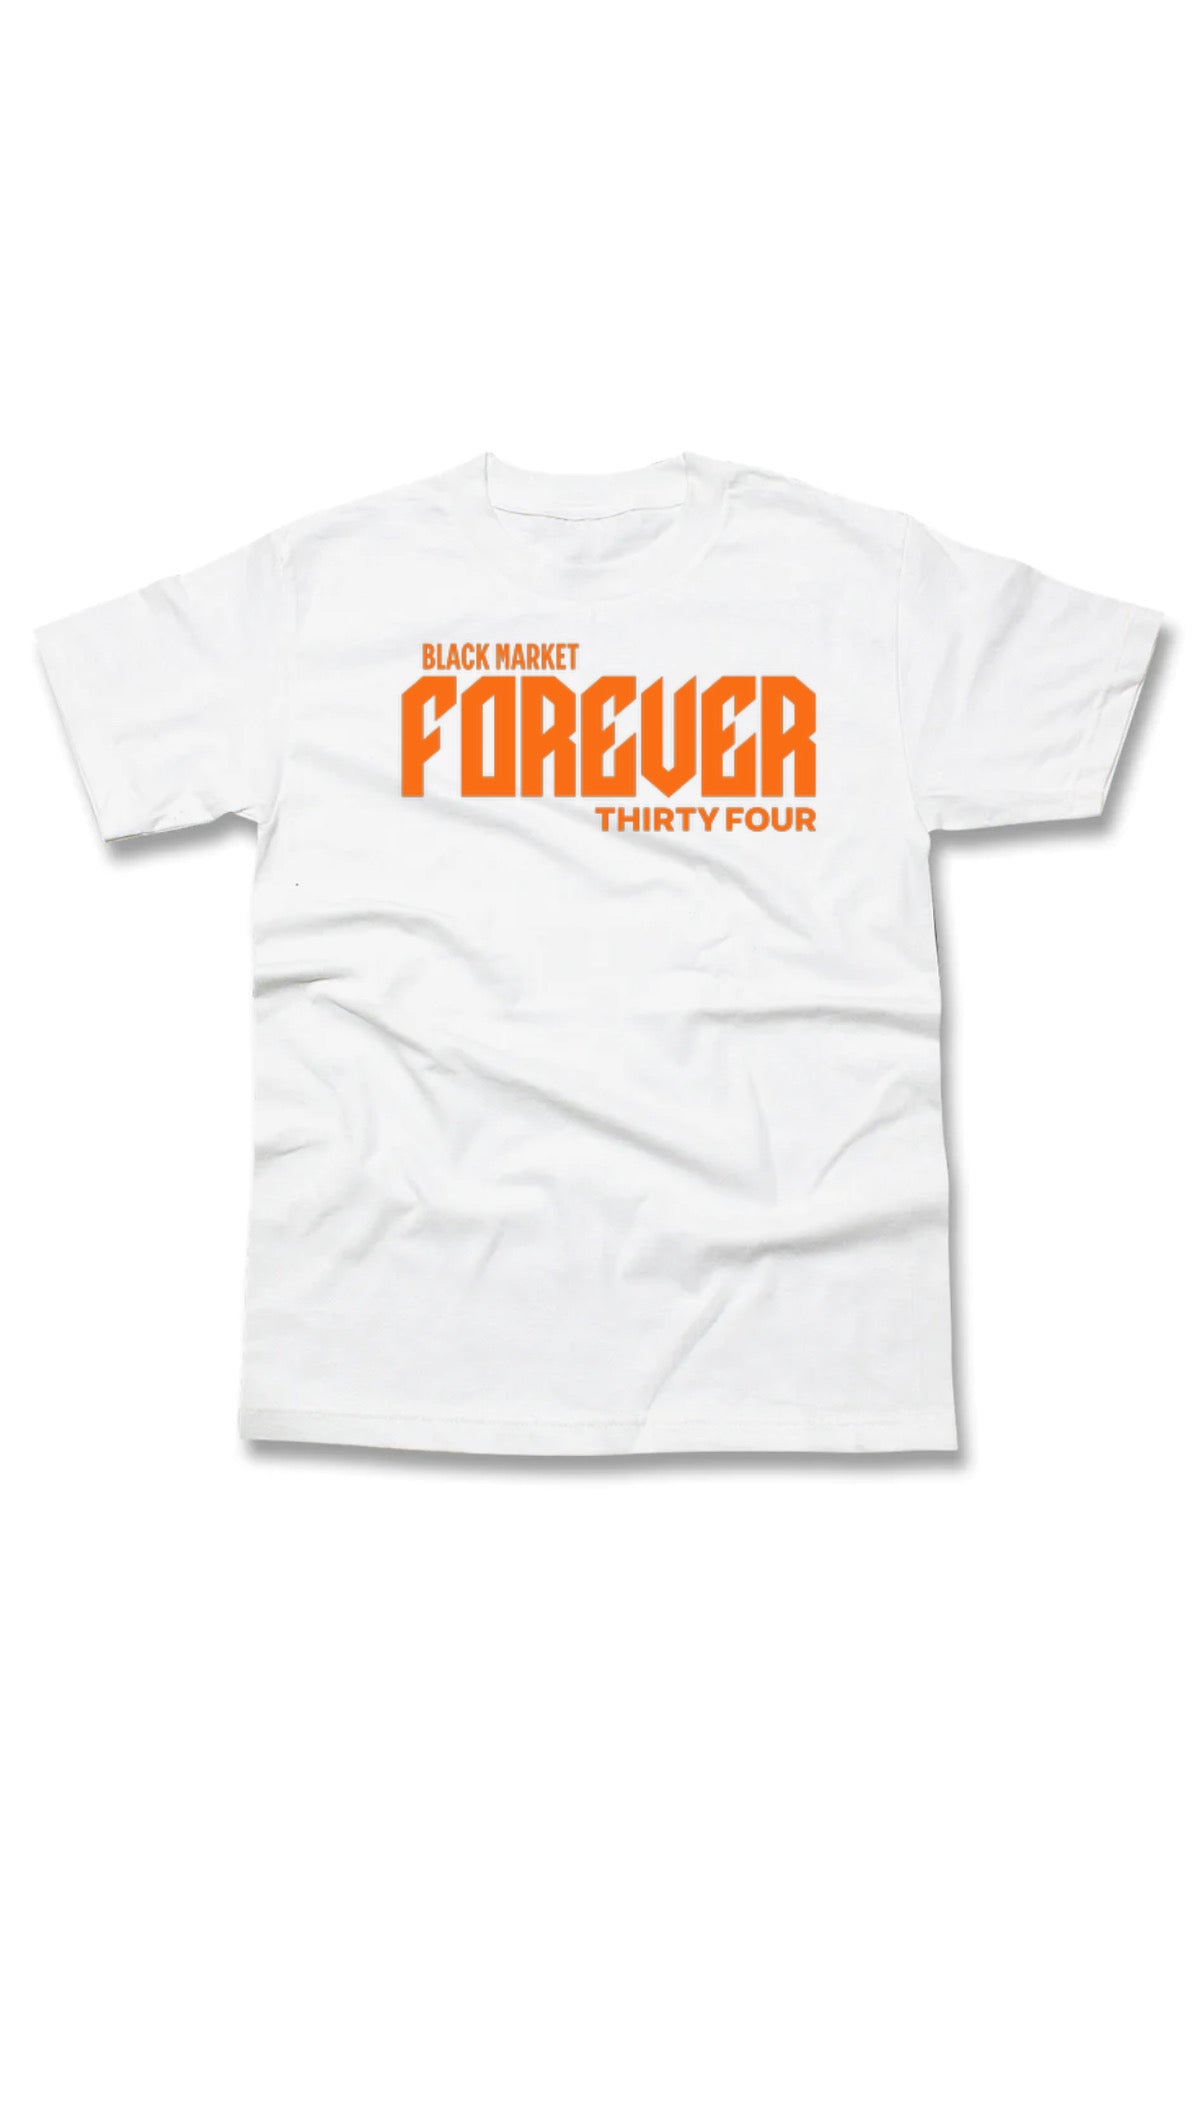 Black Market Forever 34 Branded Tshirt